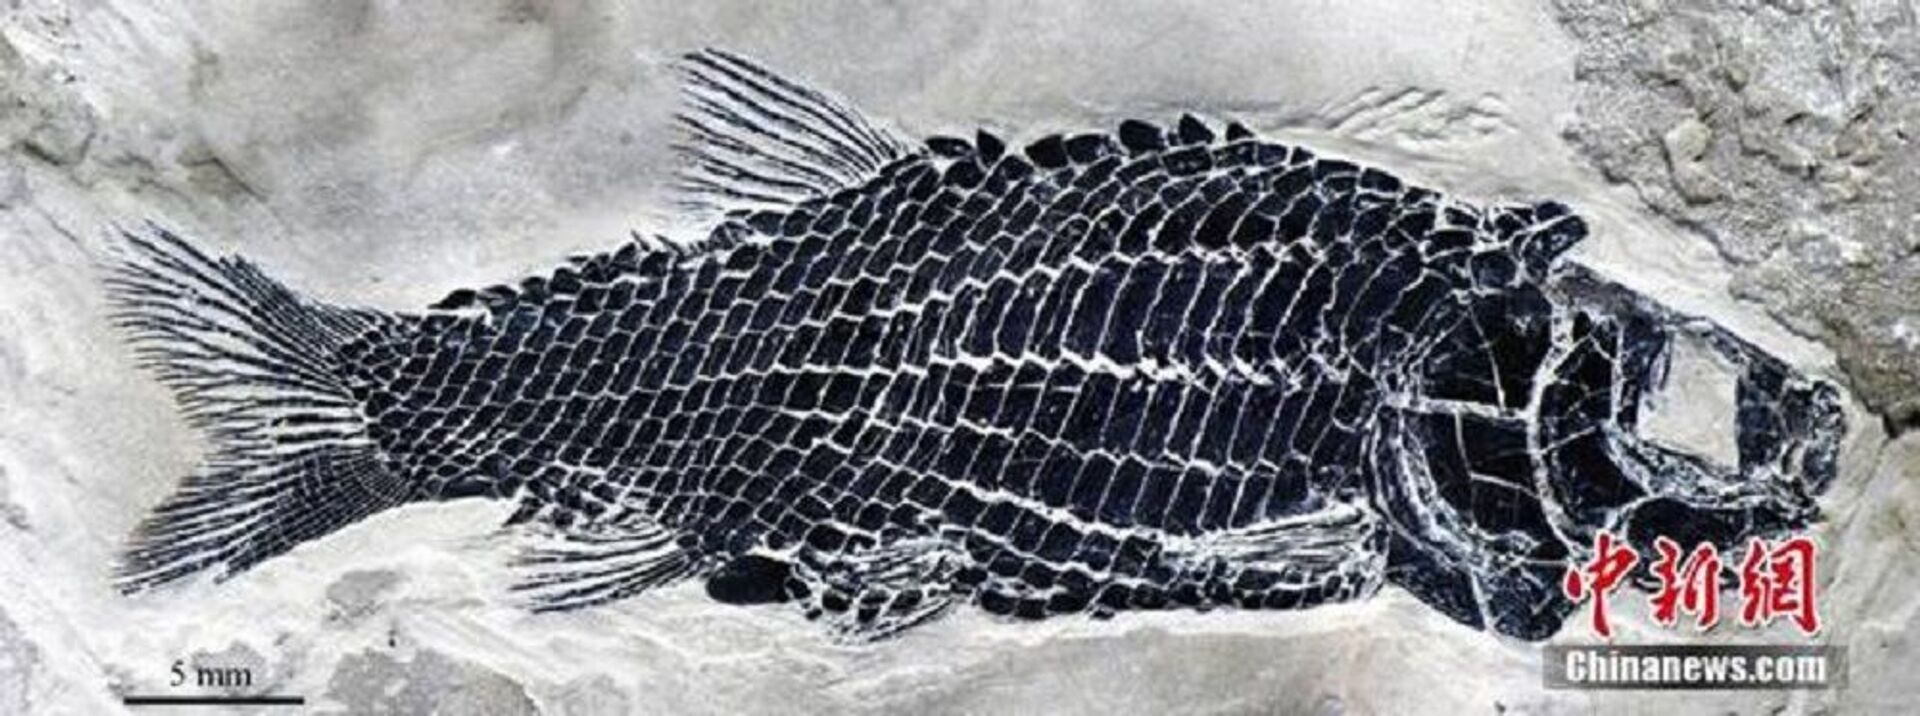 Çin’de 244 milyon yıl öncesine ait balık fosili bulundu - Sputnik Türkiye, 1920, 16.07.2020